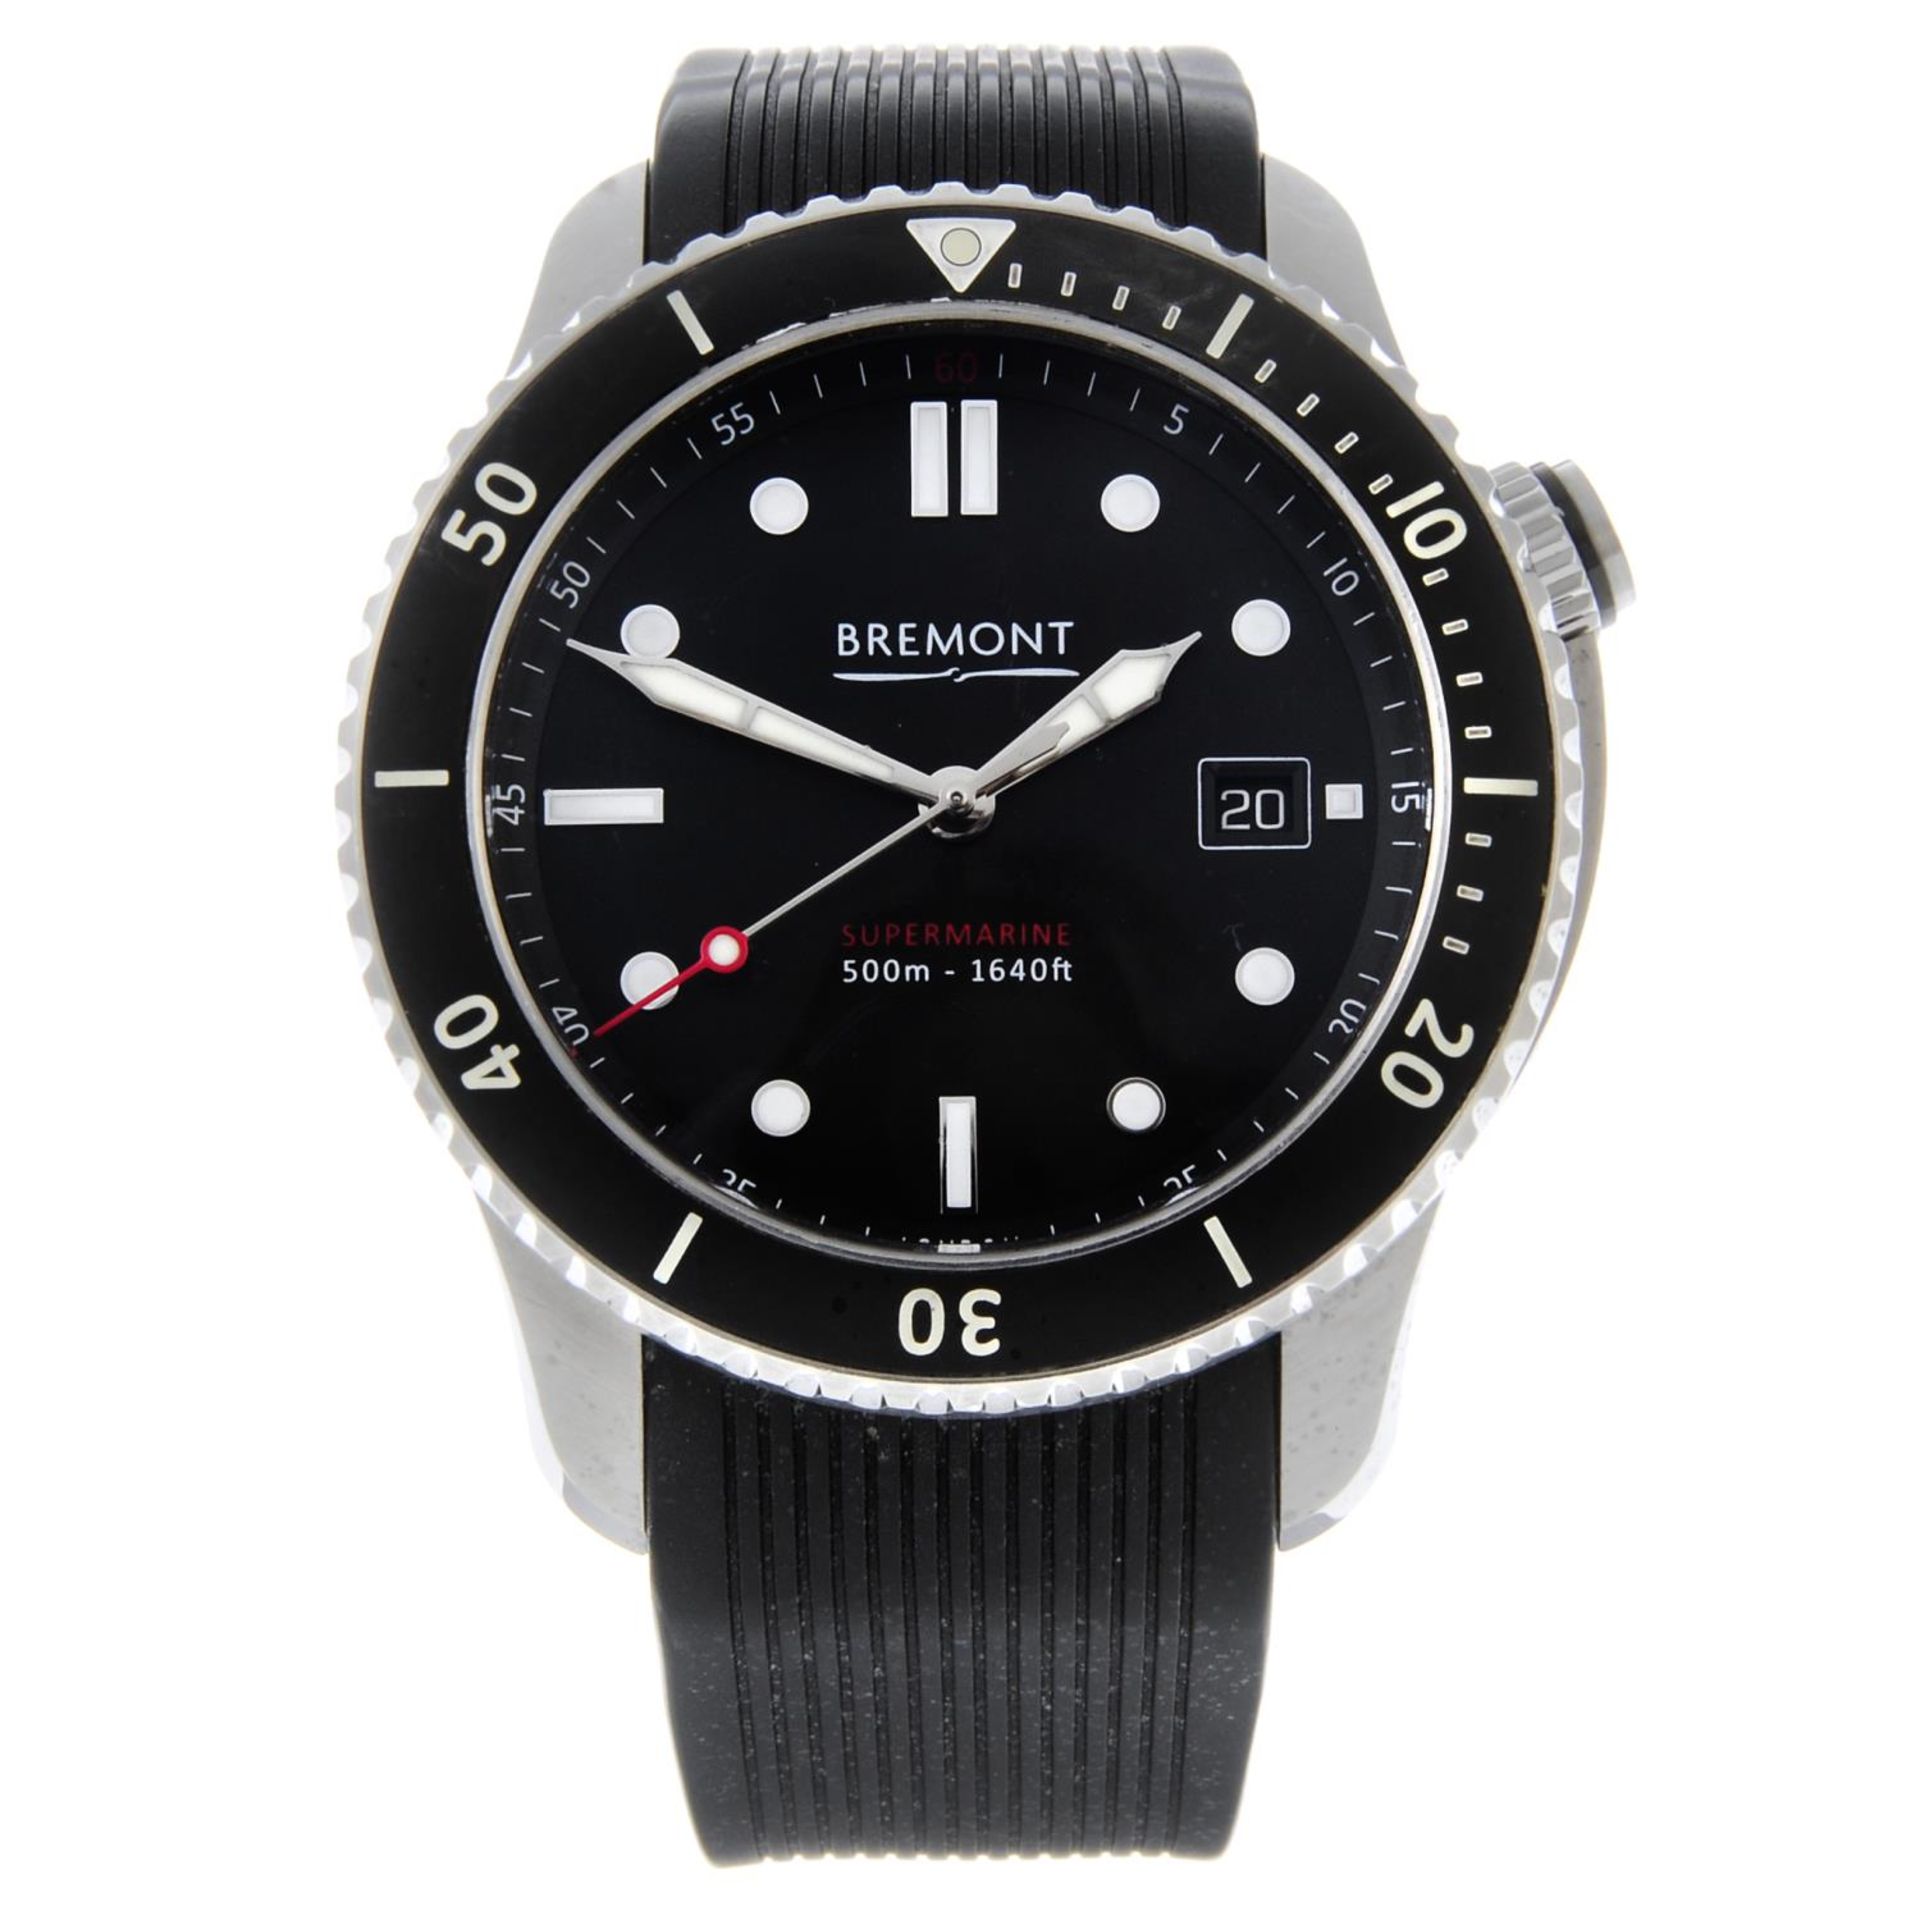 BREMONT - a gentleman's Supermarine S500 wrist watch.